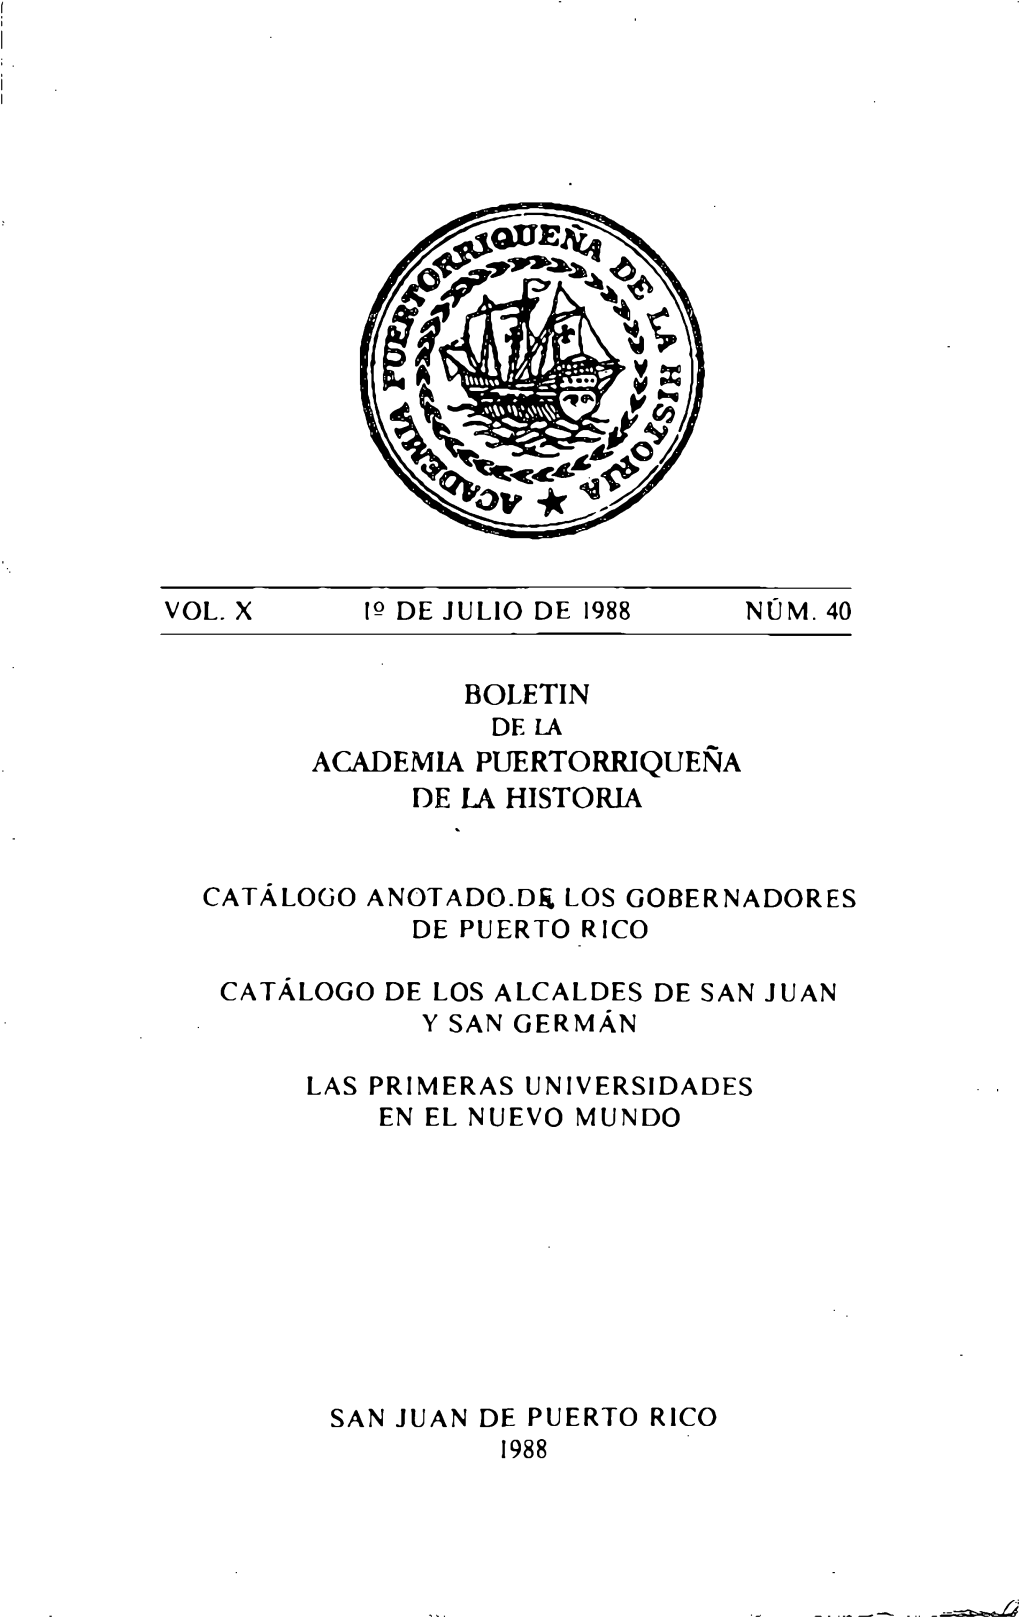 Boletin De La Academia Puertorriqueña De La Historia